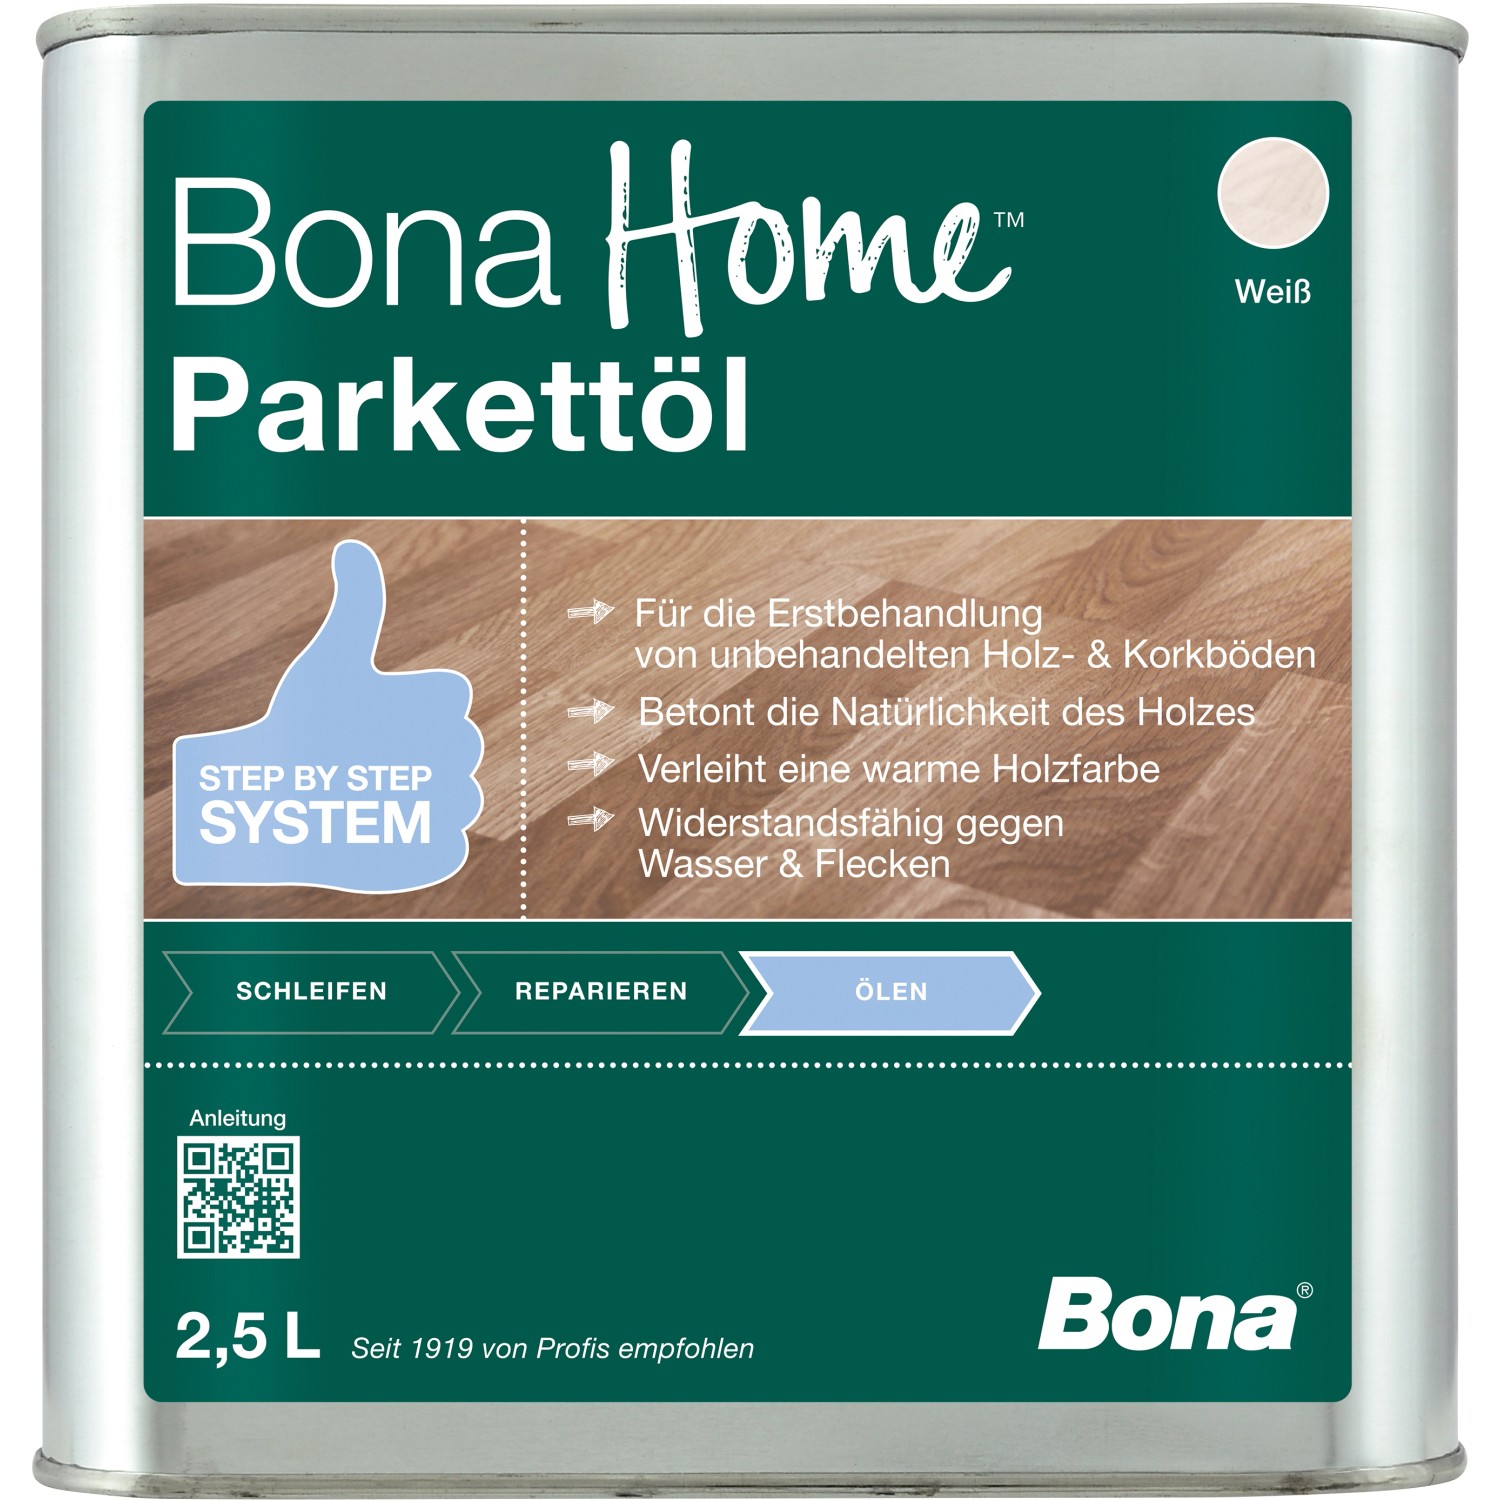 Bona Home Parkett-Öl Weiß 2,5 l